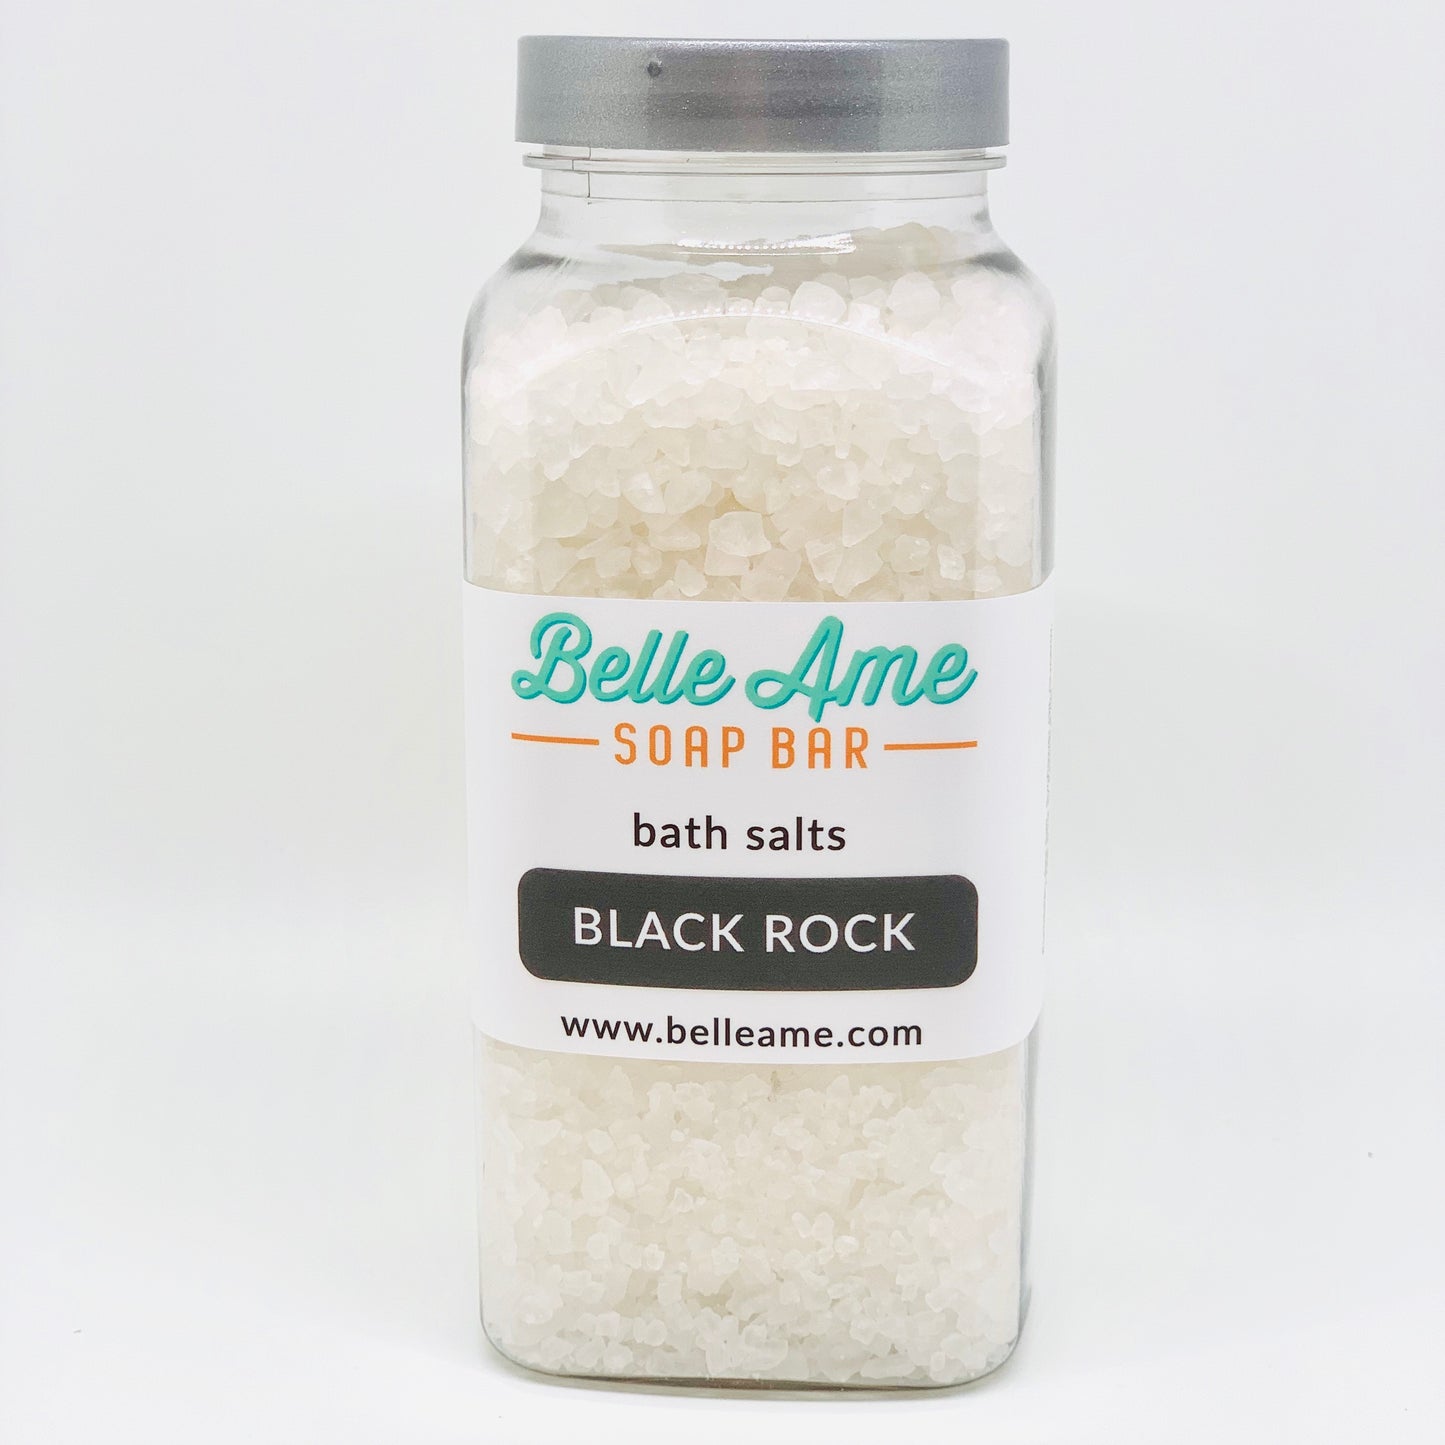 Black Rock Bath Salts